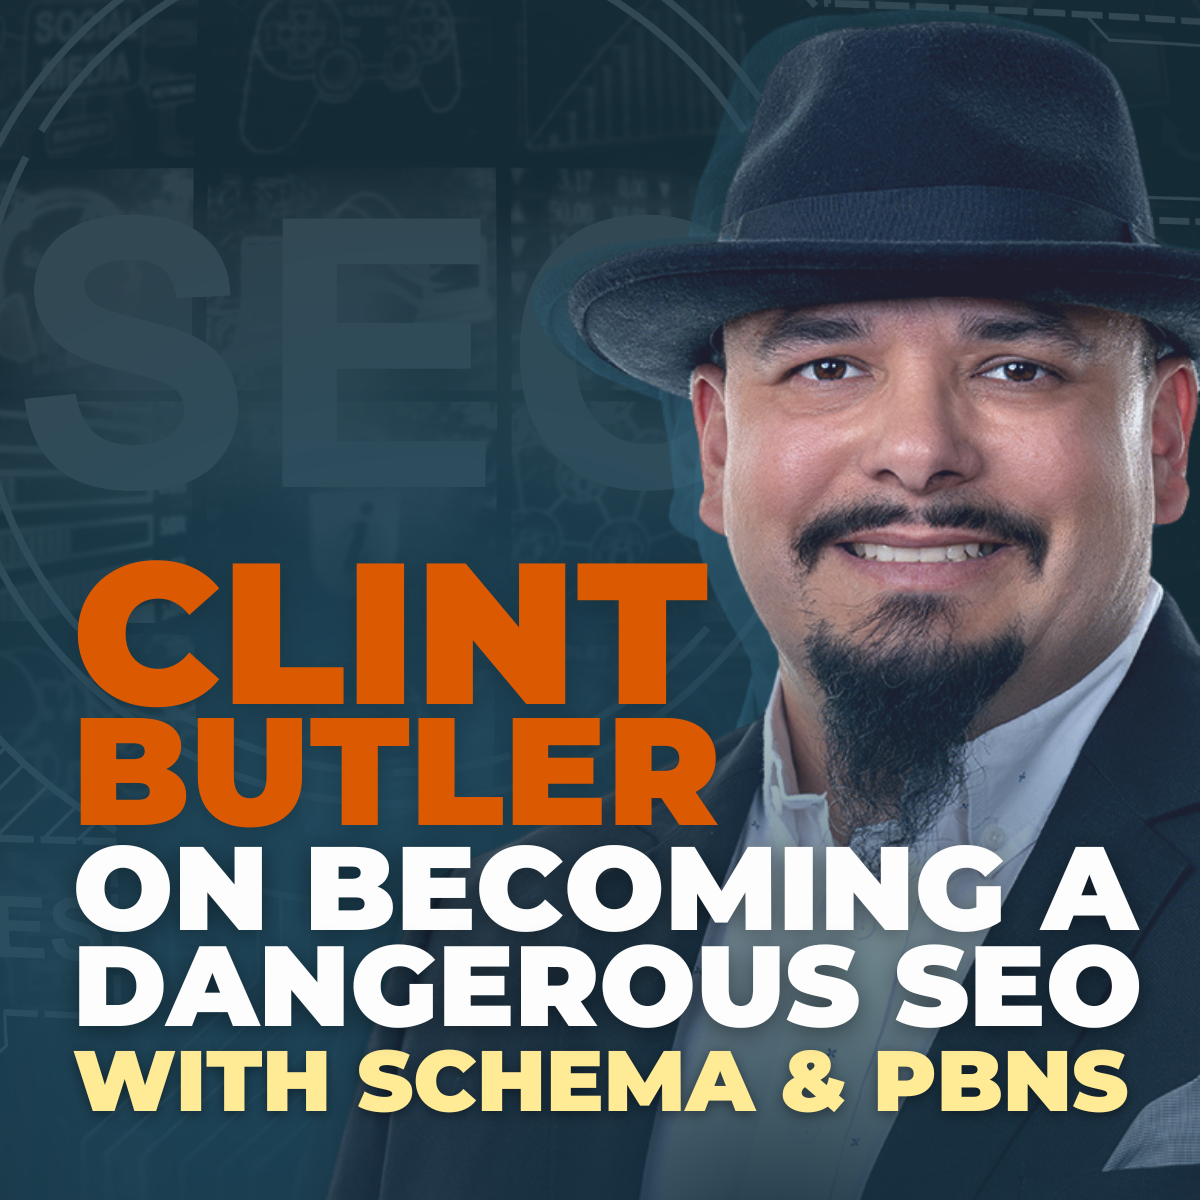 Clint Butler on becoming a dangeorus SEO with schema & PBNs